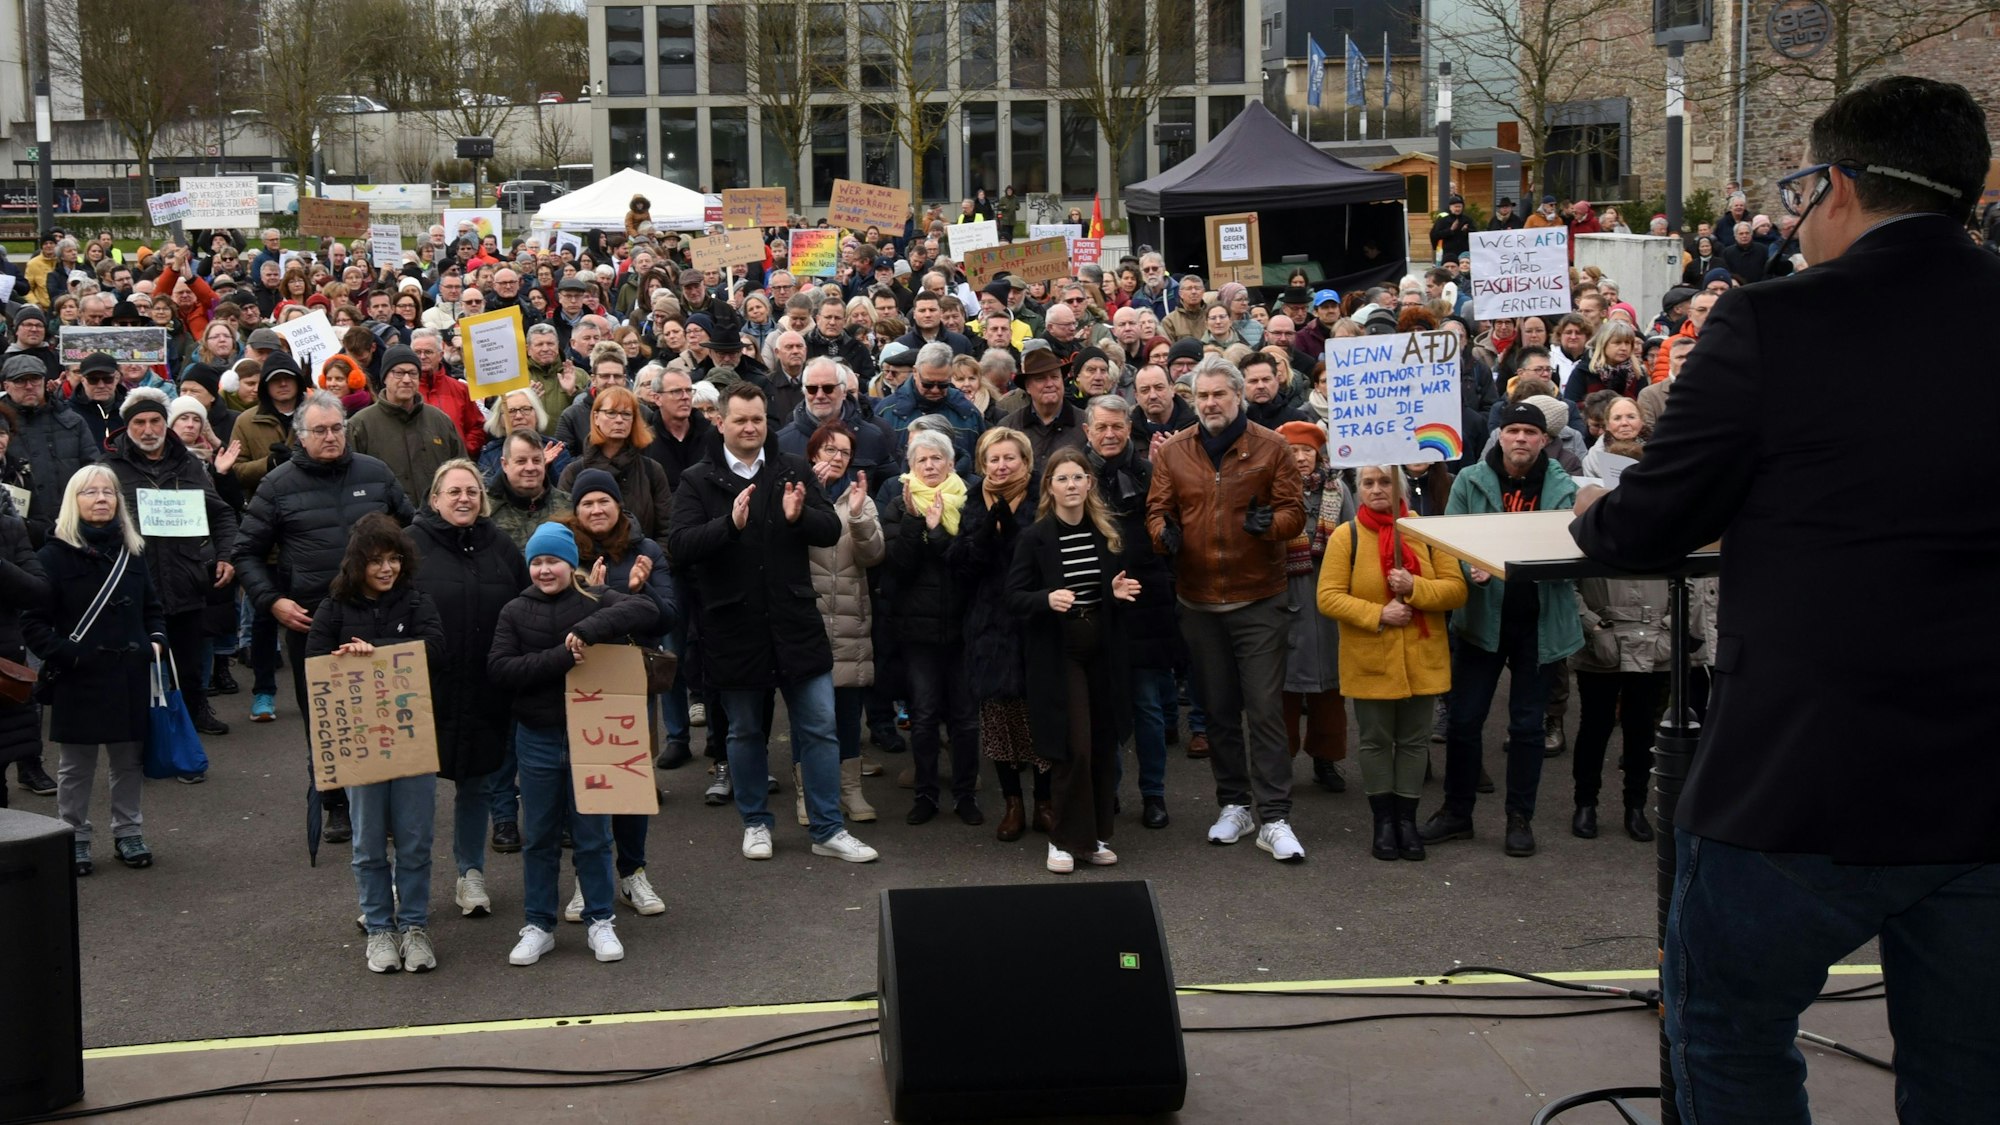 Prallgefüllt war am Sonntag das Steinmüllergelände in Gummersbach. Laut und am Ende sichtlich bewegt, reif auch Gummersbachs Bürgermeister Frank Helmenstein zu Solidarität auf (rechts im Foto).